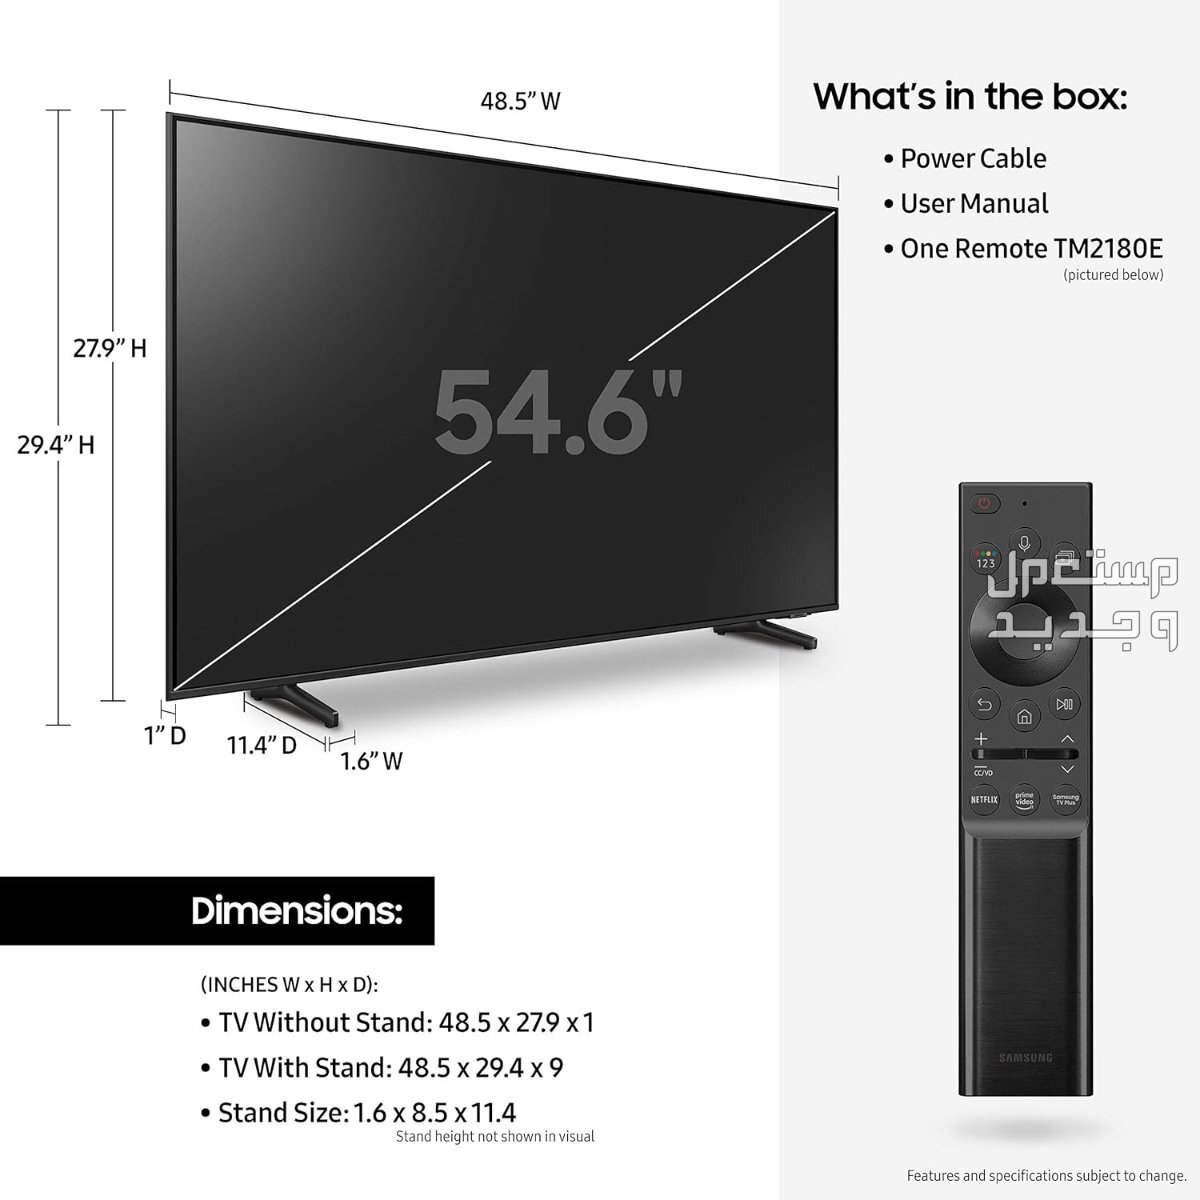 انواع تلفزيون 55 بوصة بالمواصفات والصور والأسعار تلفزيون 55 بوصة ماركة سامسونج موديل QA55Q60ABUXUM